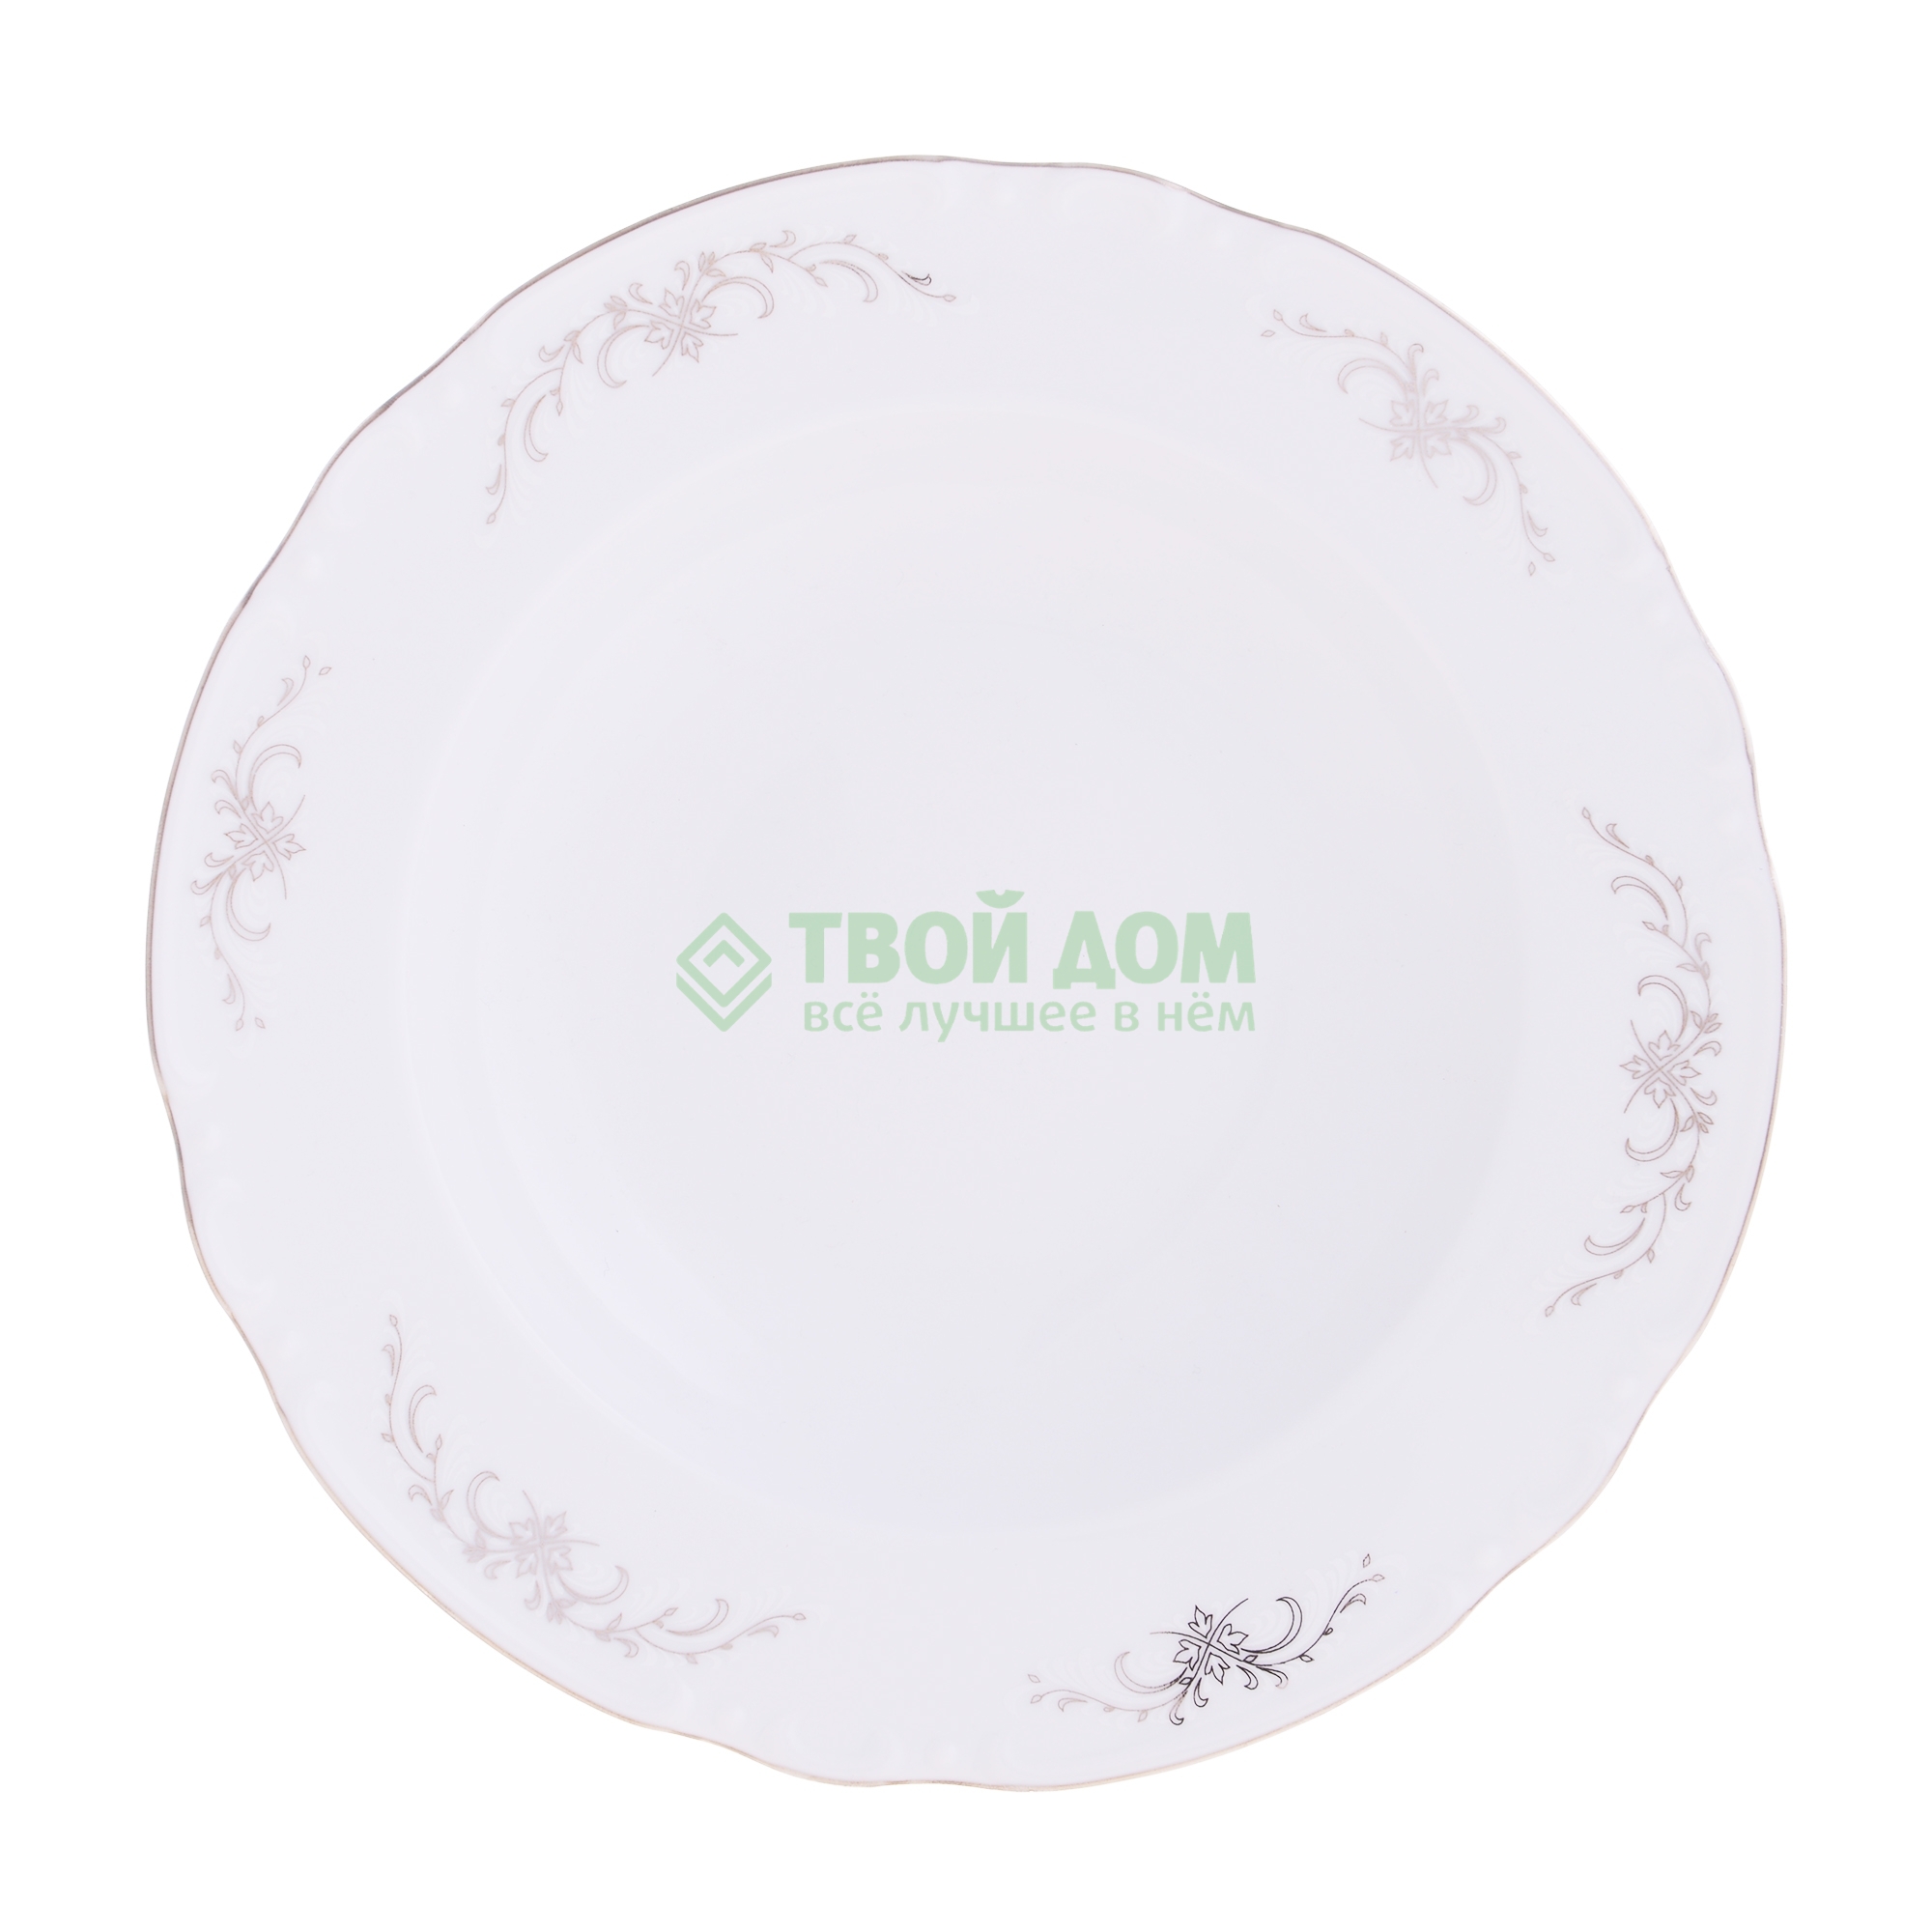 Тарелка Thun Констанция 23 см тарелка суповая thun констанция 23 см